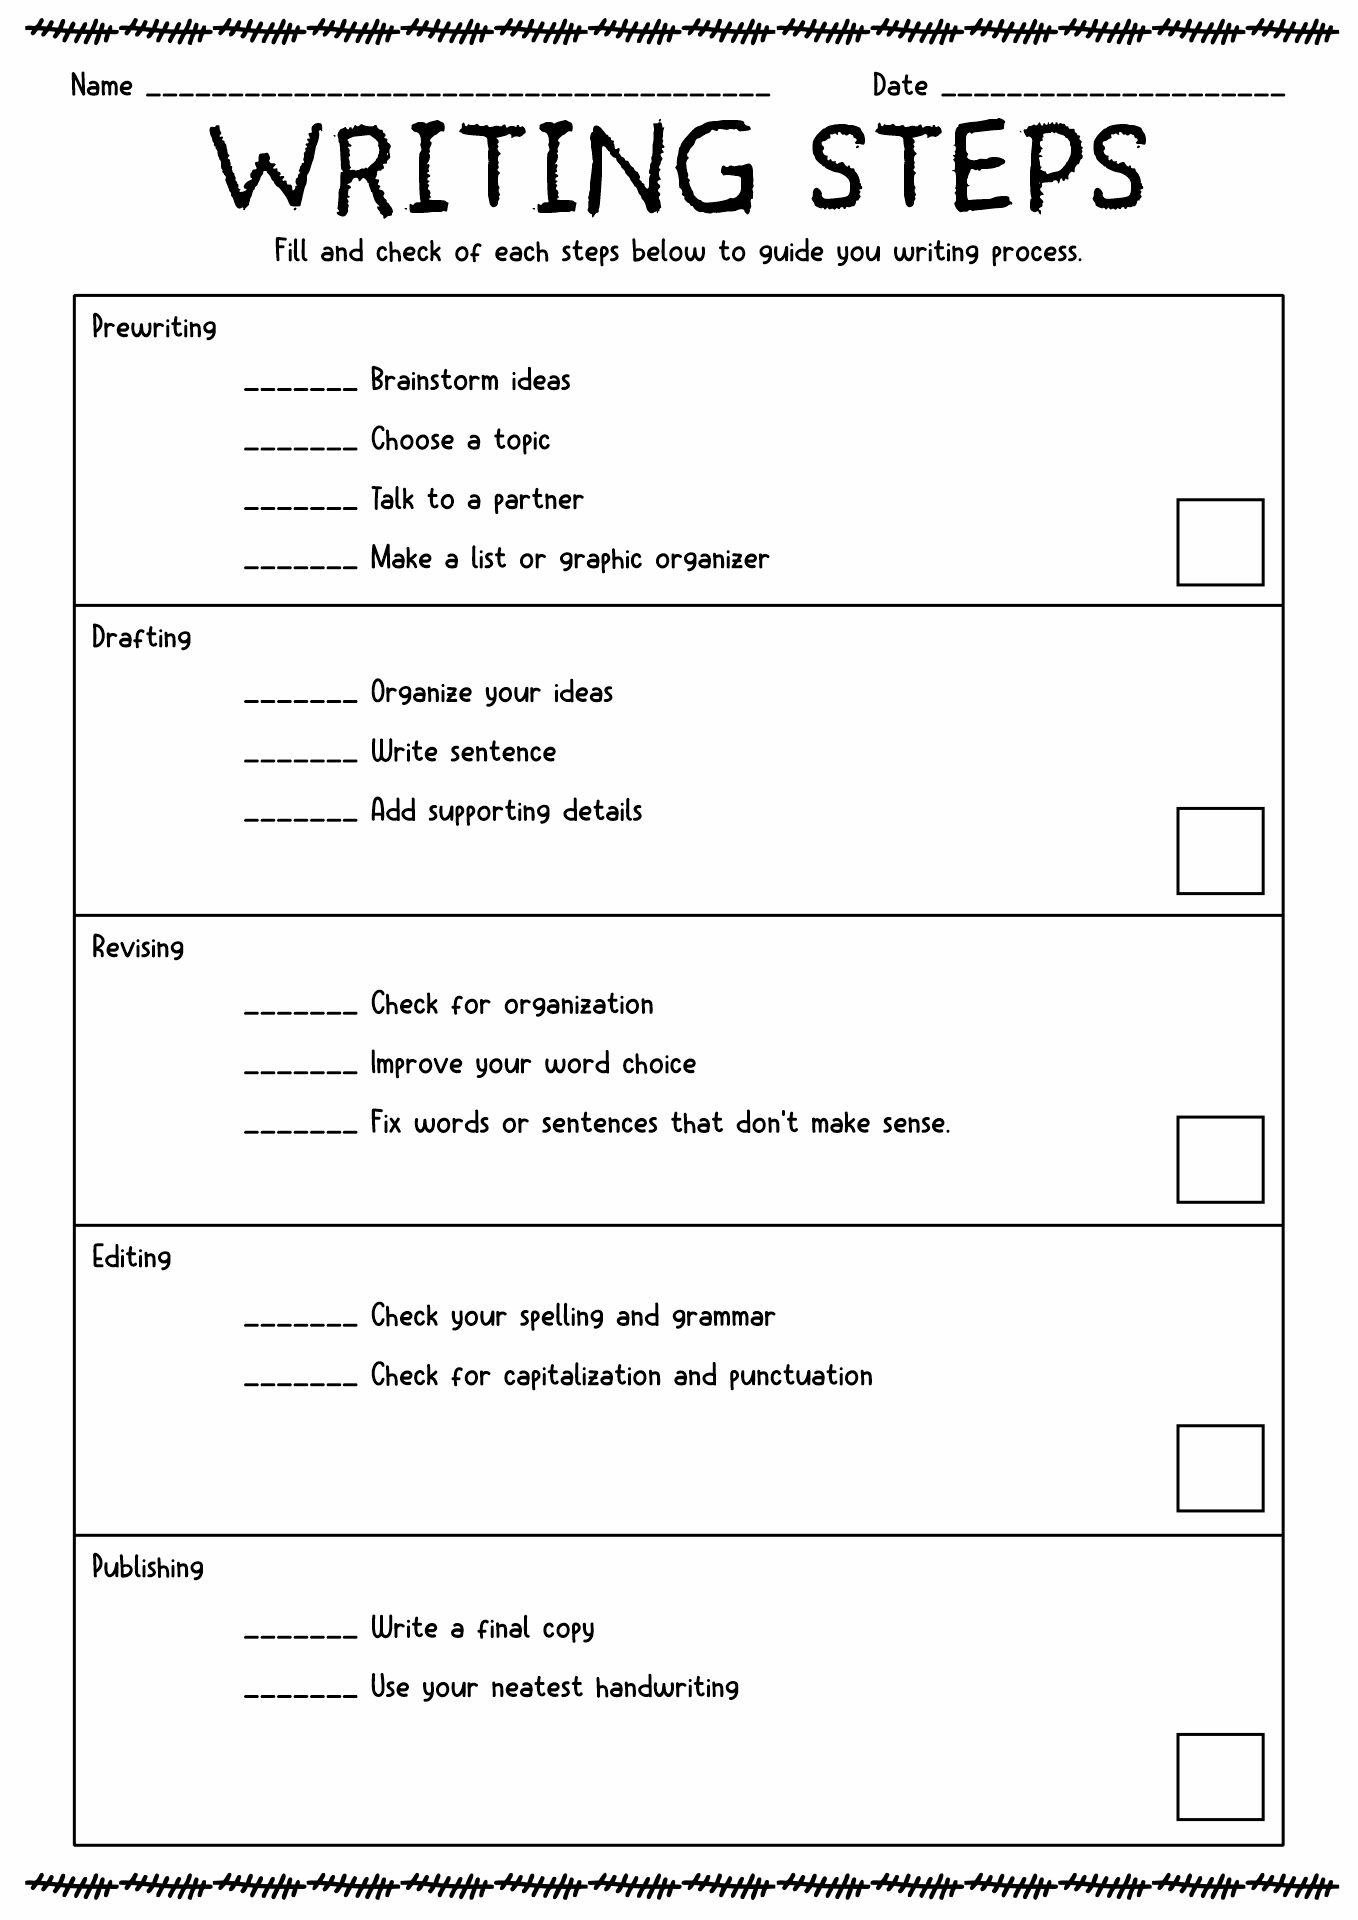 Printable Writing Process Steps Image